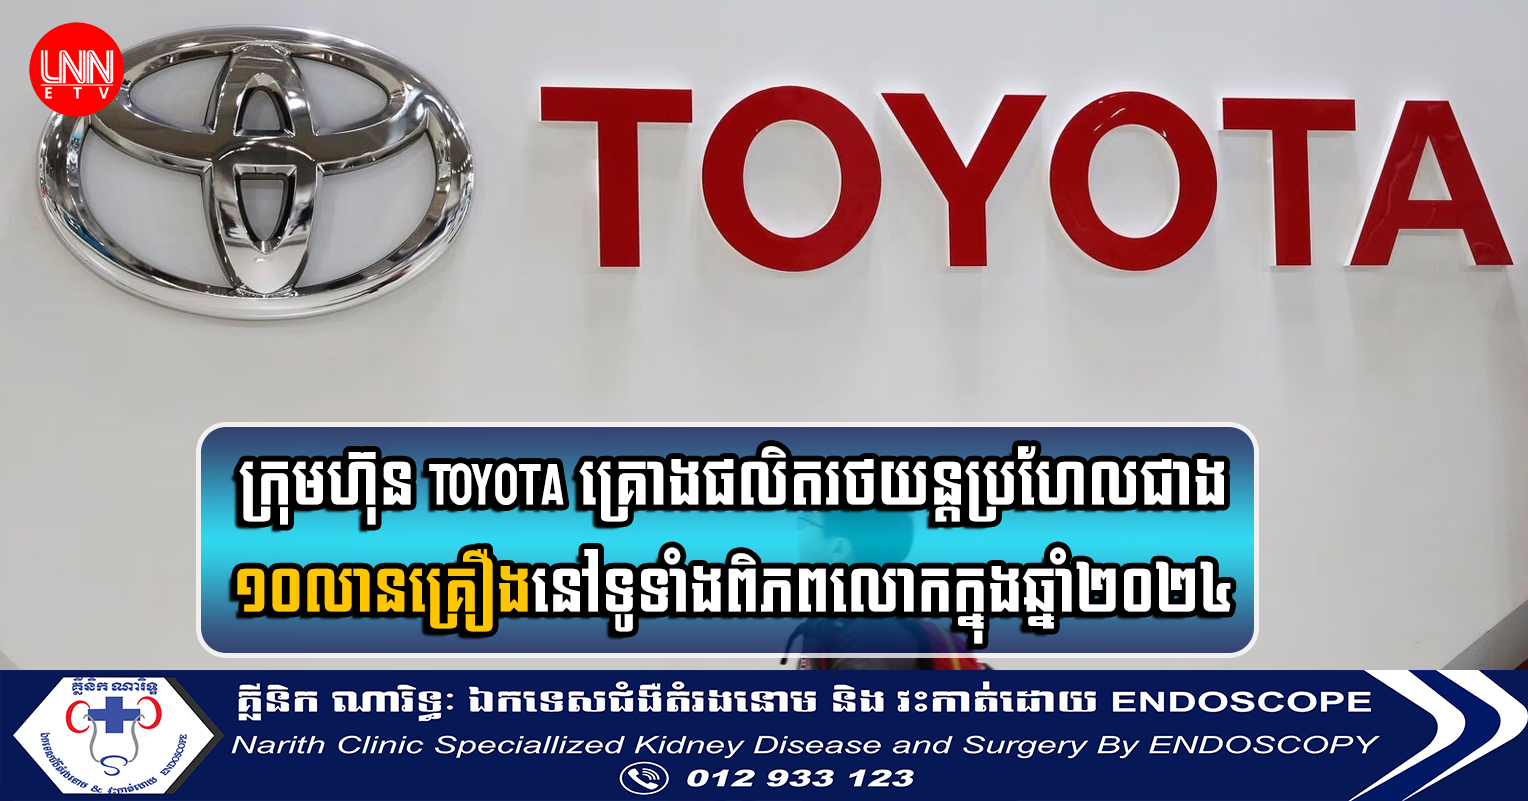 ក្រុមហ៊ុន Toyota គ្រោងផលិតរថយន្តប្រហែលជាង ១០លានគ្រឿងនៅទូទាំងពិភពលោកក្នុងឆ្នាំ២០២៤